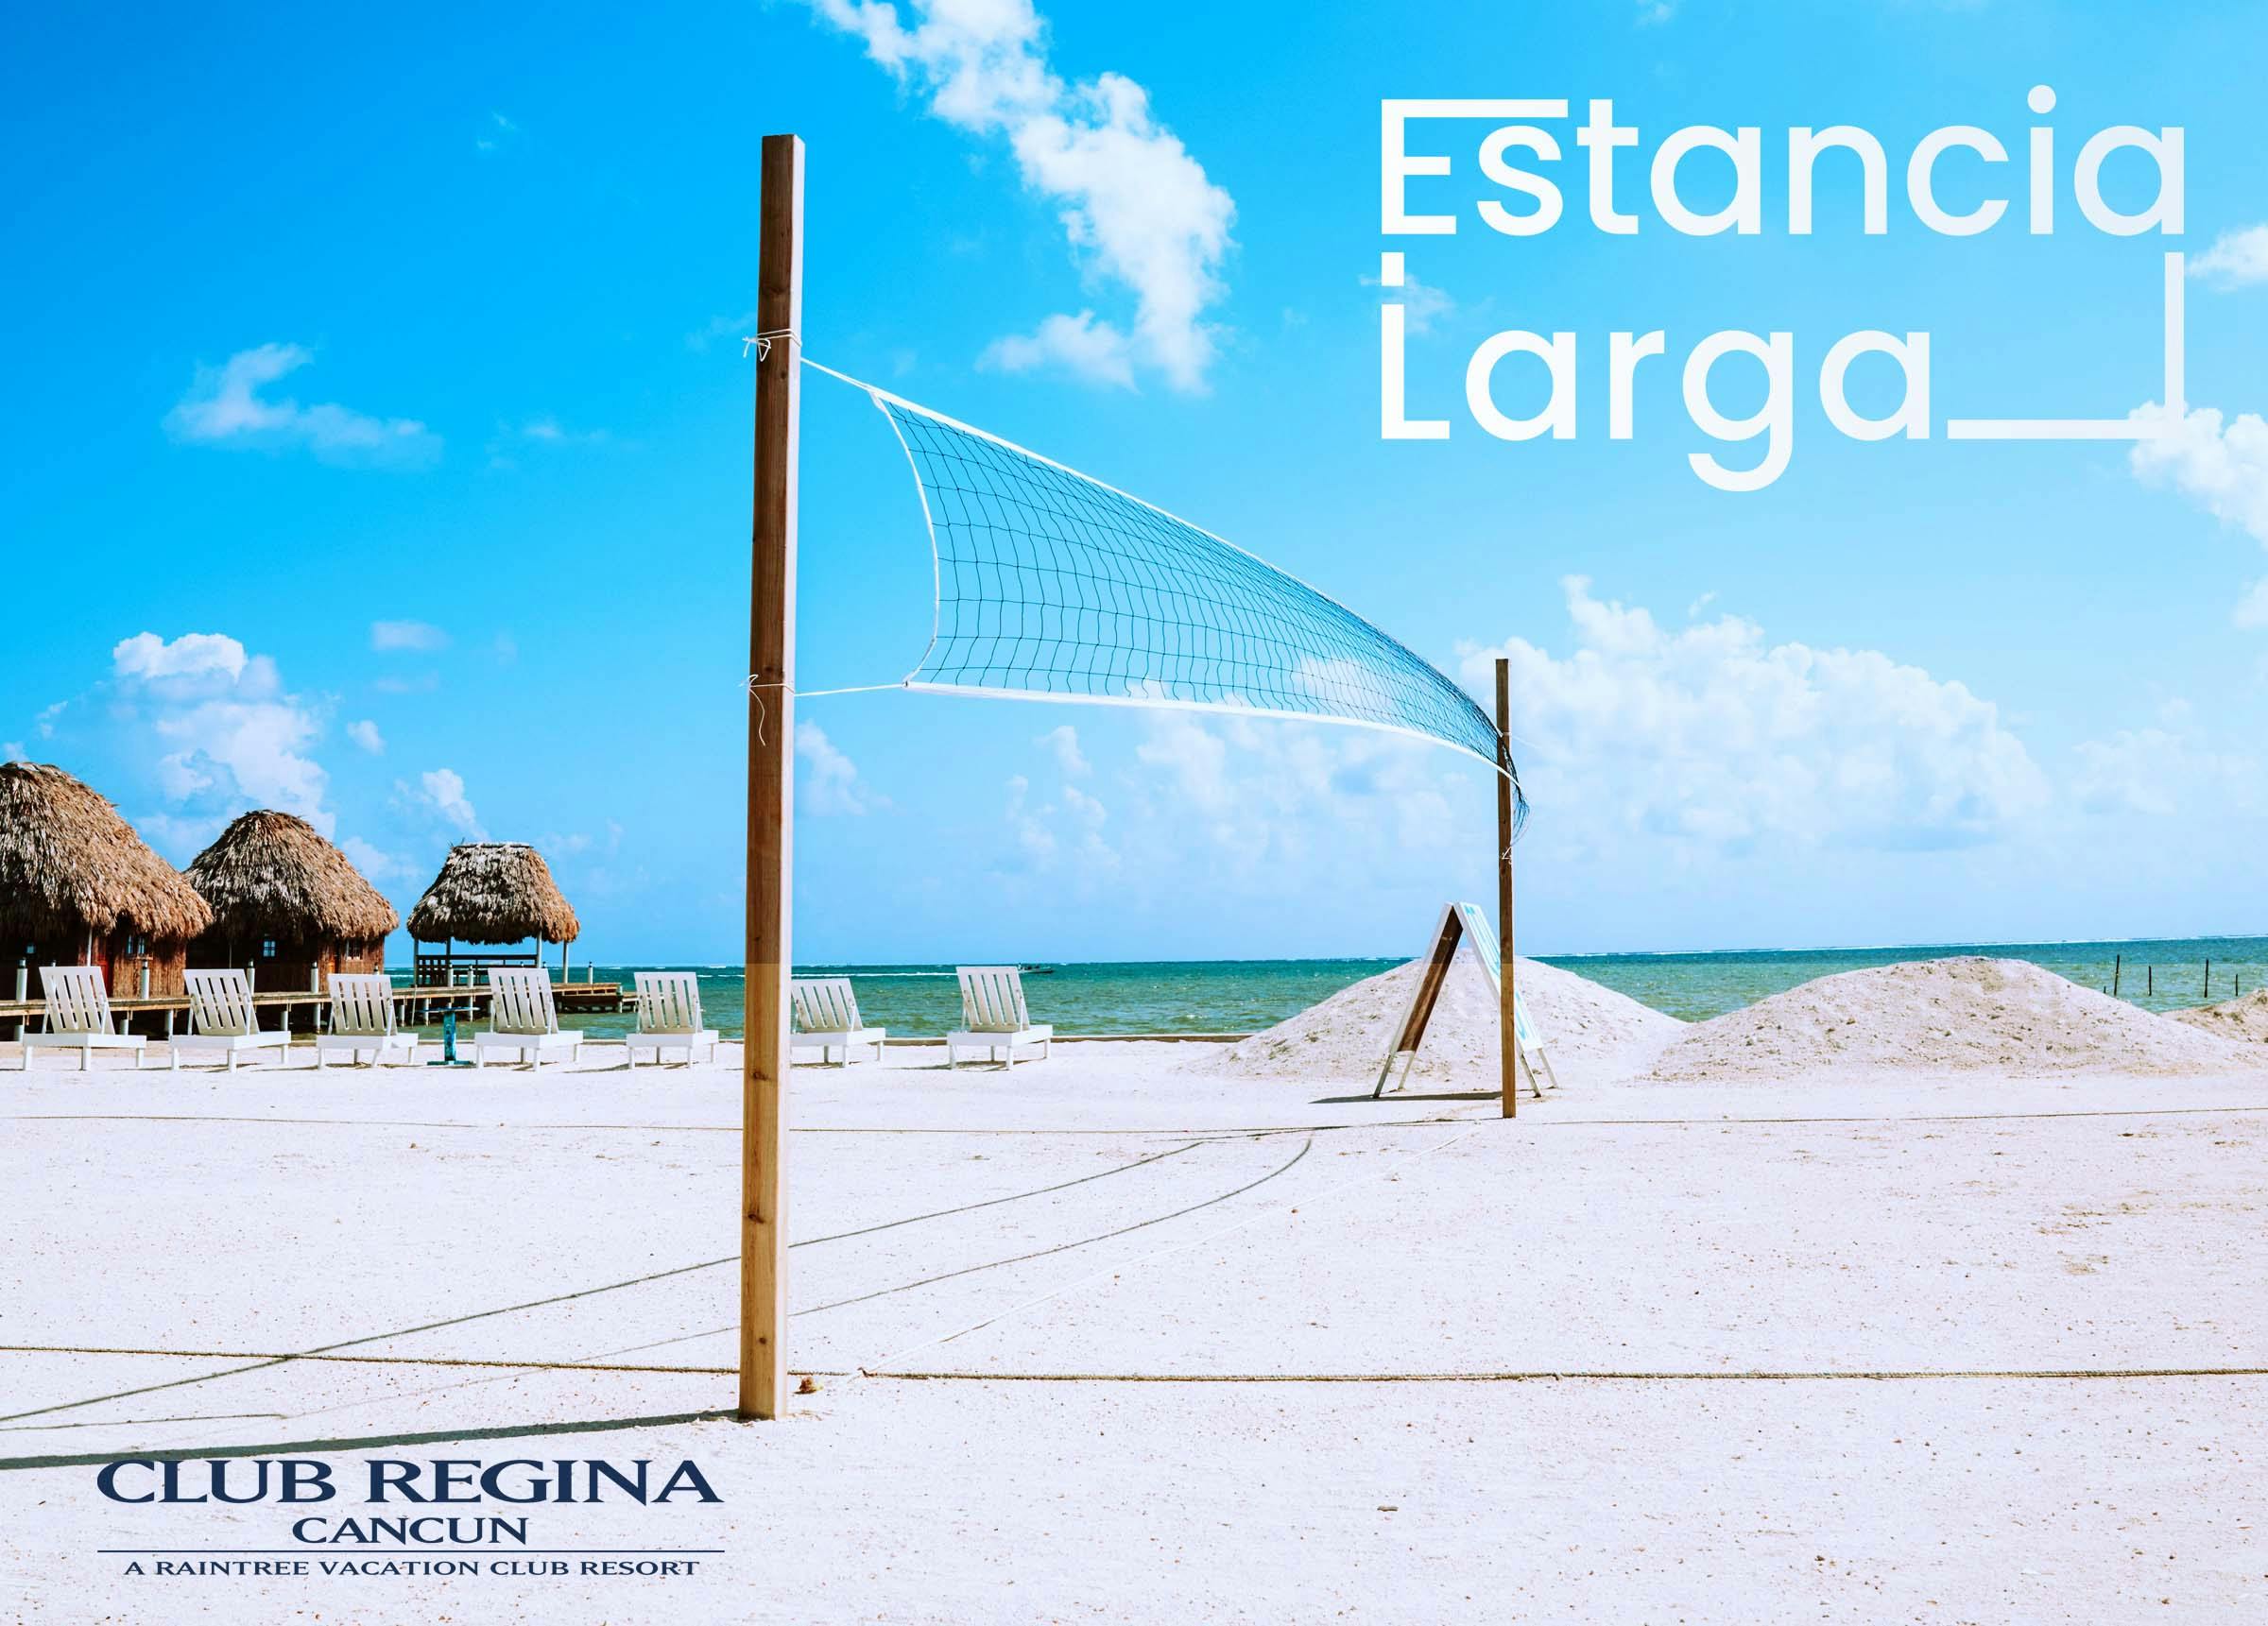 promocion-estancia-larga-club-regina-cancun-con-image-de-la-playa